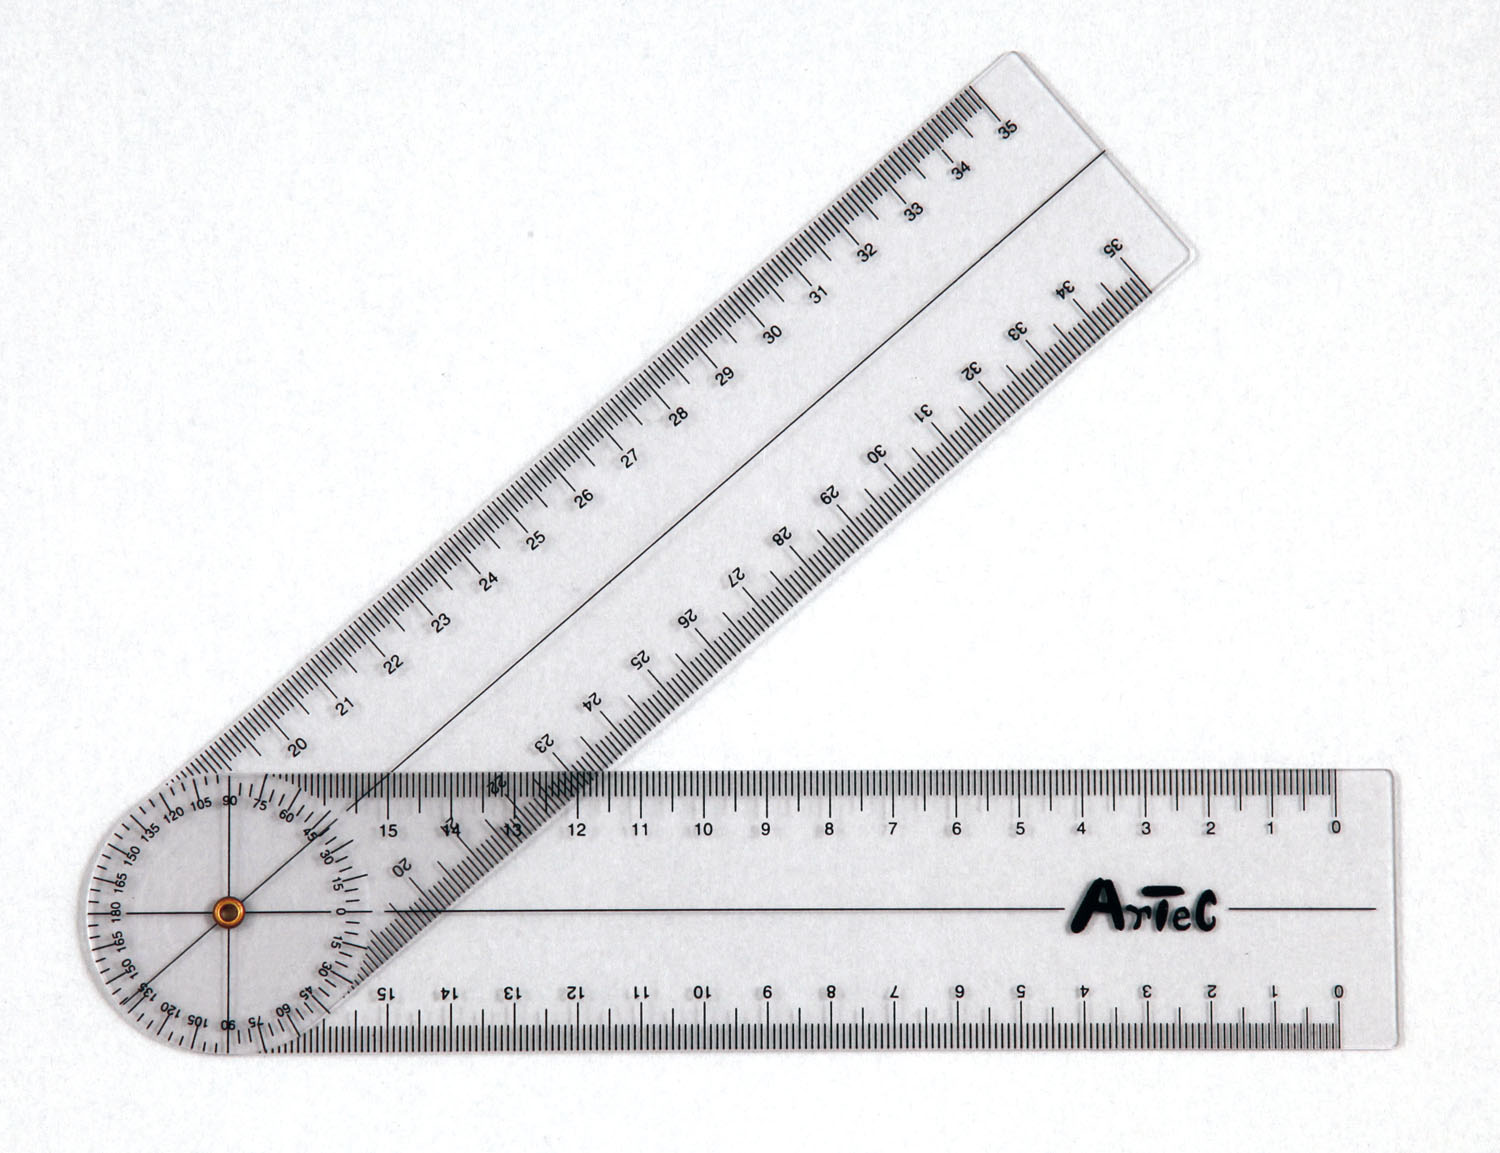 ゴニオメーター プラスチック 角度計 お気に入 関節可動範囲の測定や 運動角度の測定などに使えます アーテック 最大73%OFFクーポン